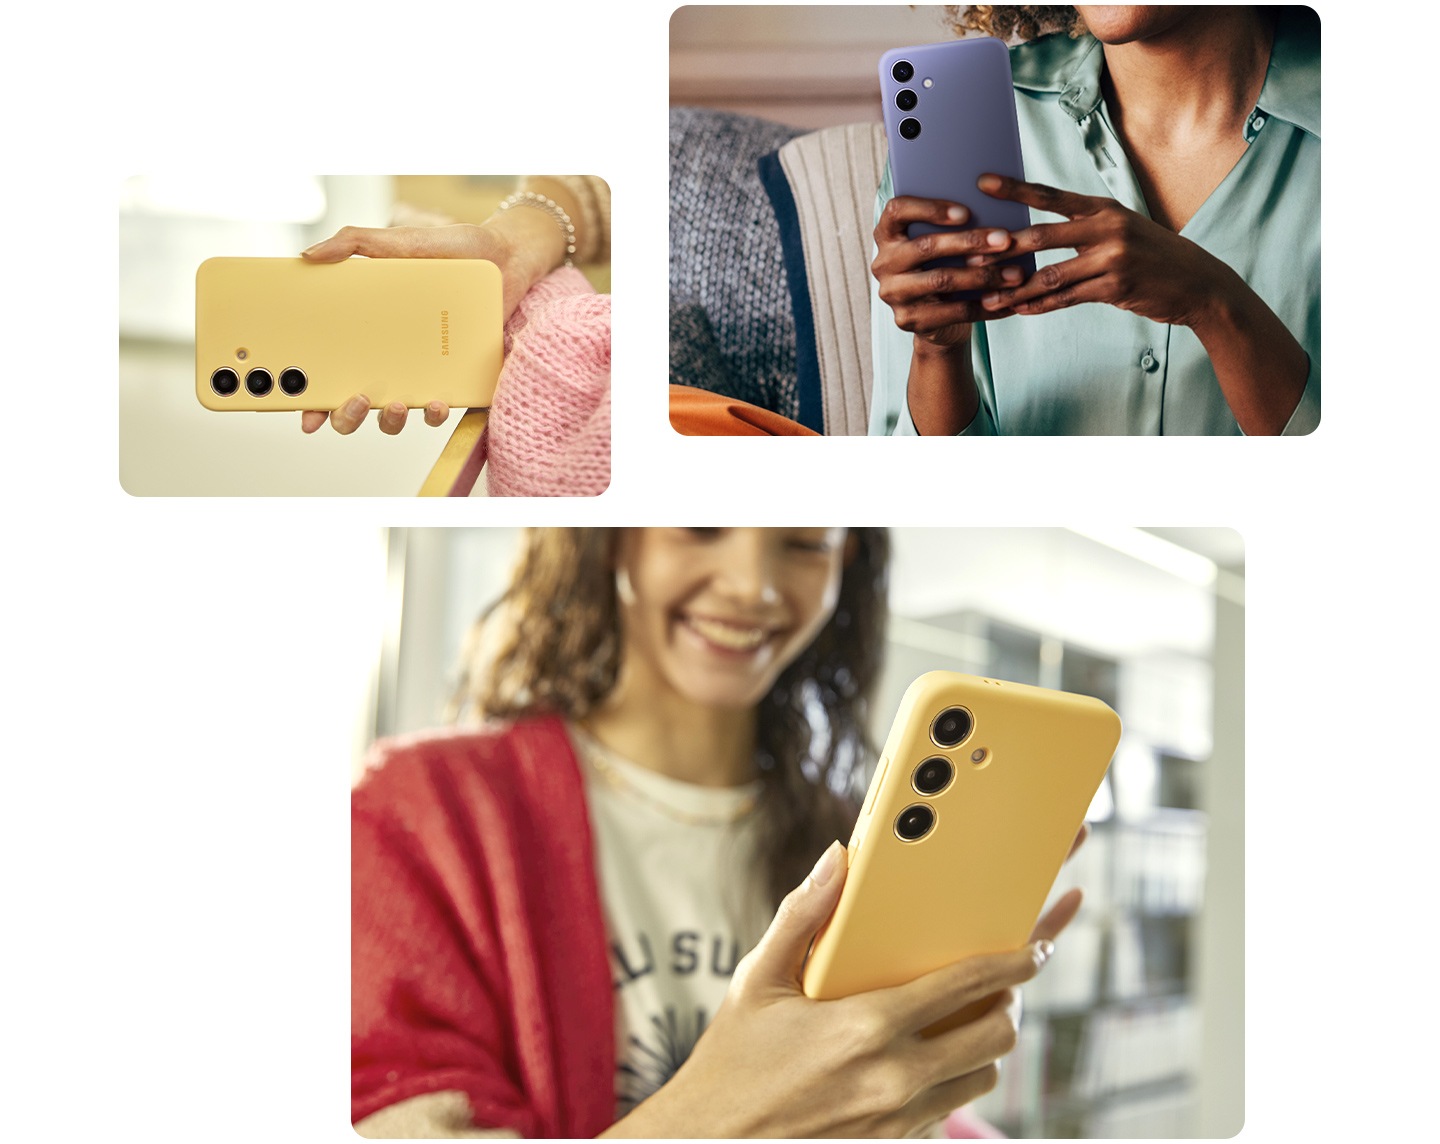 Ở phía trên bên trái, một người phụ nữ đang thoải mái cầm chiếc Galaxy S24 Plus trong một chiếc ốp lưng Silicone màu tím. Bên dưới, hai bức ảnh khác nhau cho thấy một người cầm một chiếc điện thoại Galaxy S24 Plus trong một chiếc ốp lưng Silicone màu vàng bằng một tay, cho thấy sự dễ dàng của tay cầm.